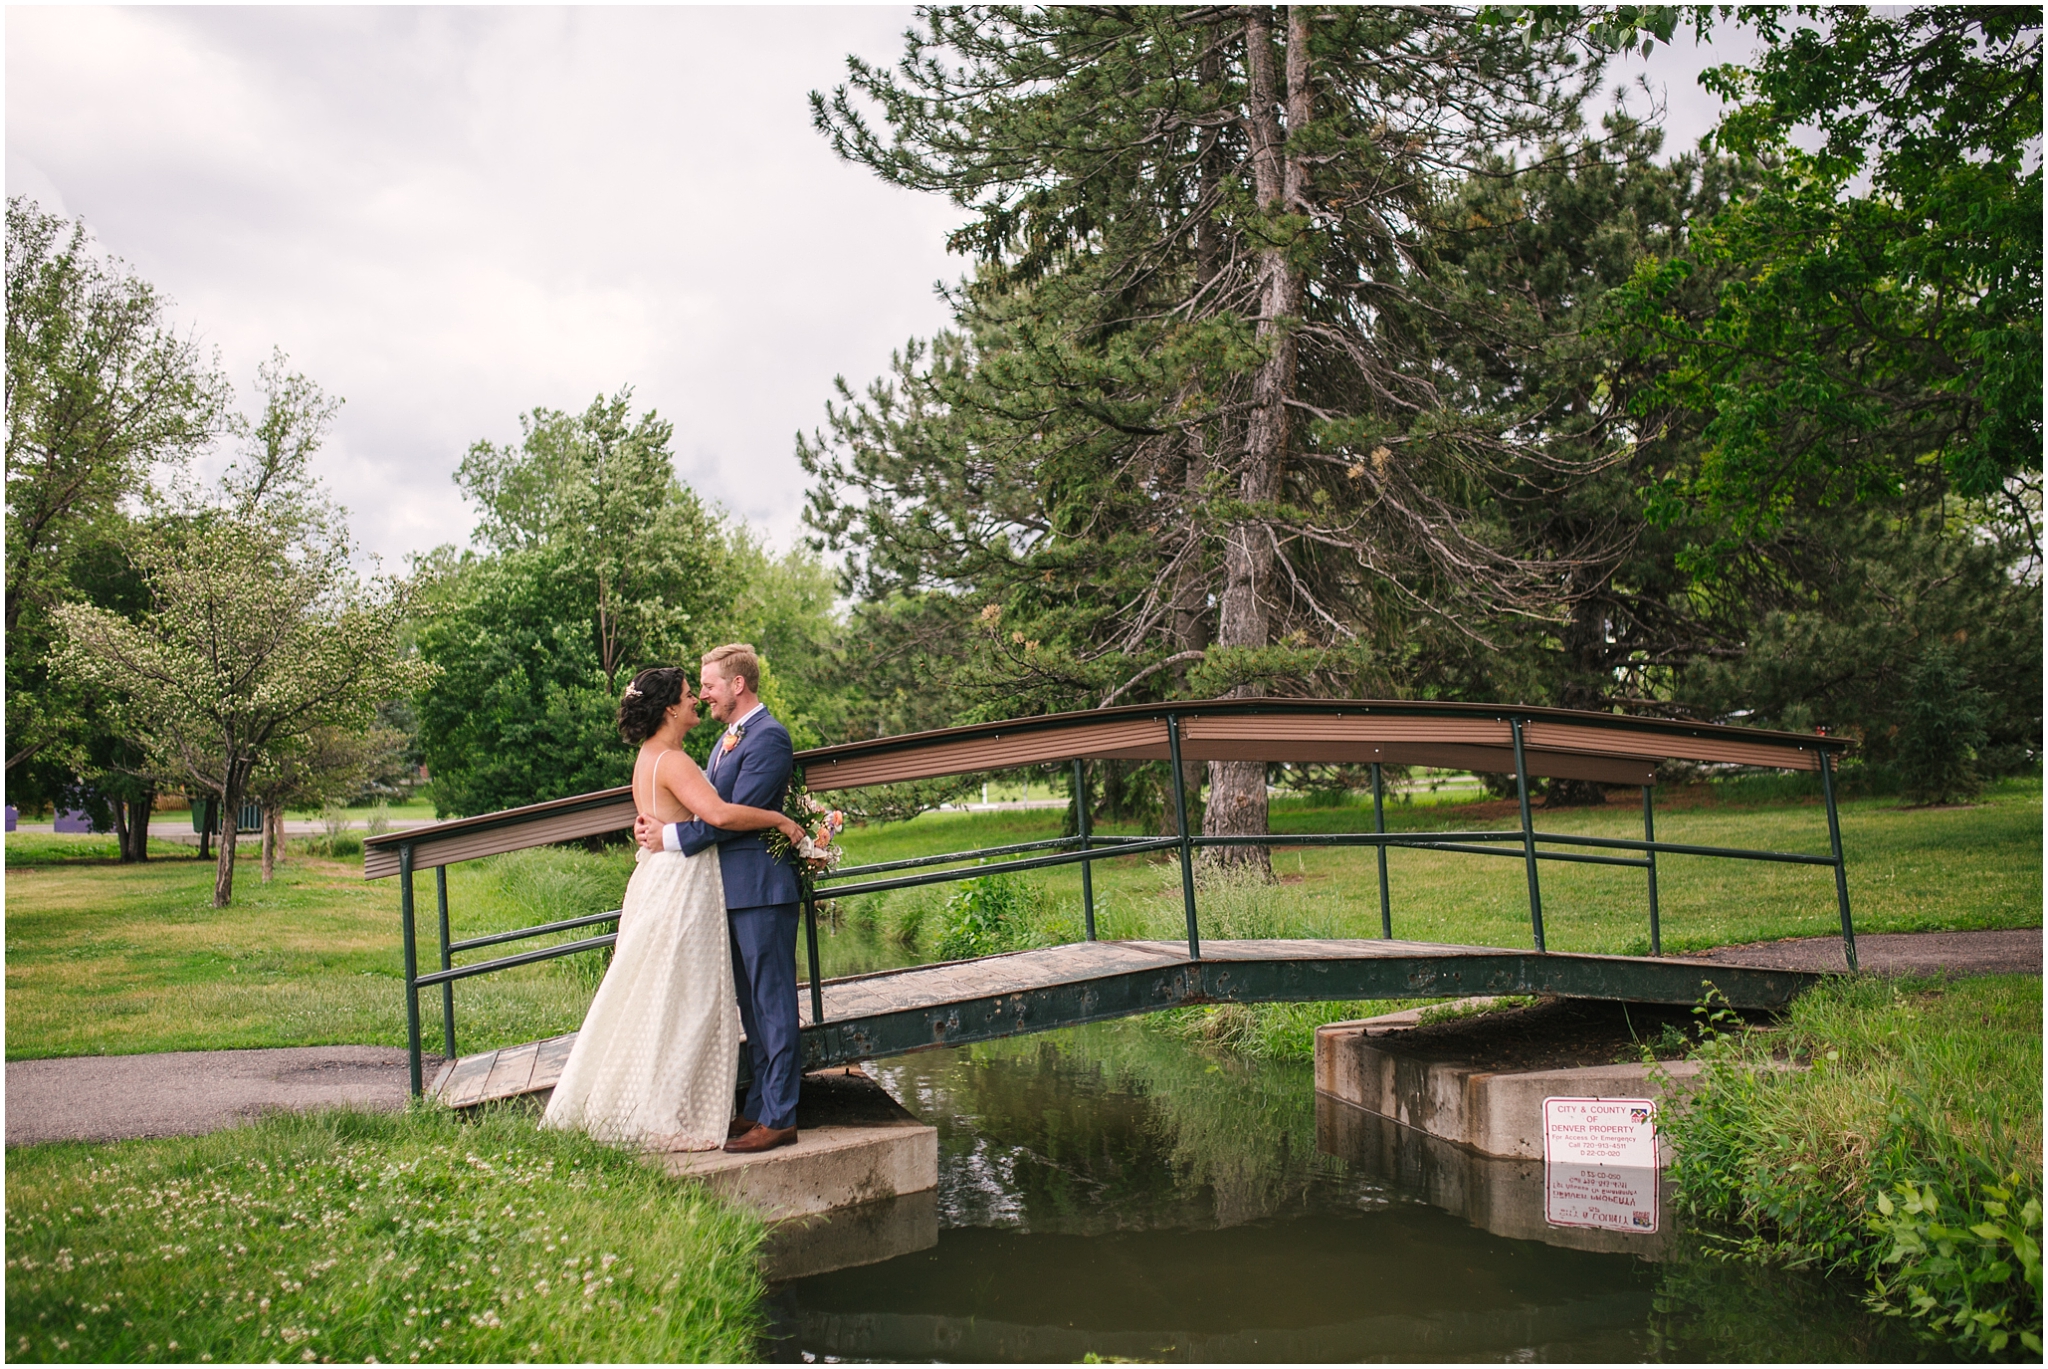 Bride and groom on a foot bridge at Washington Park in Denver Colorado